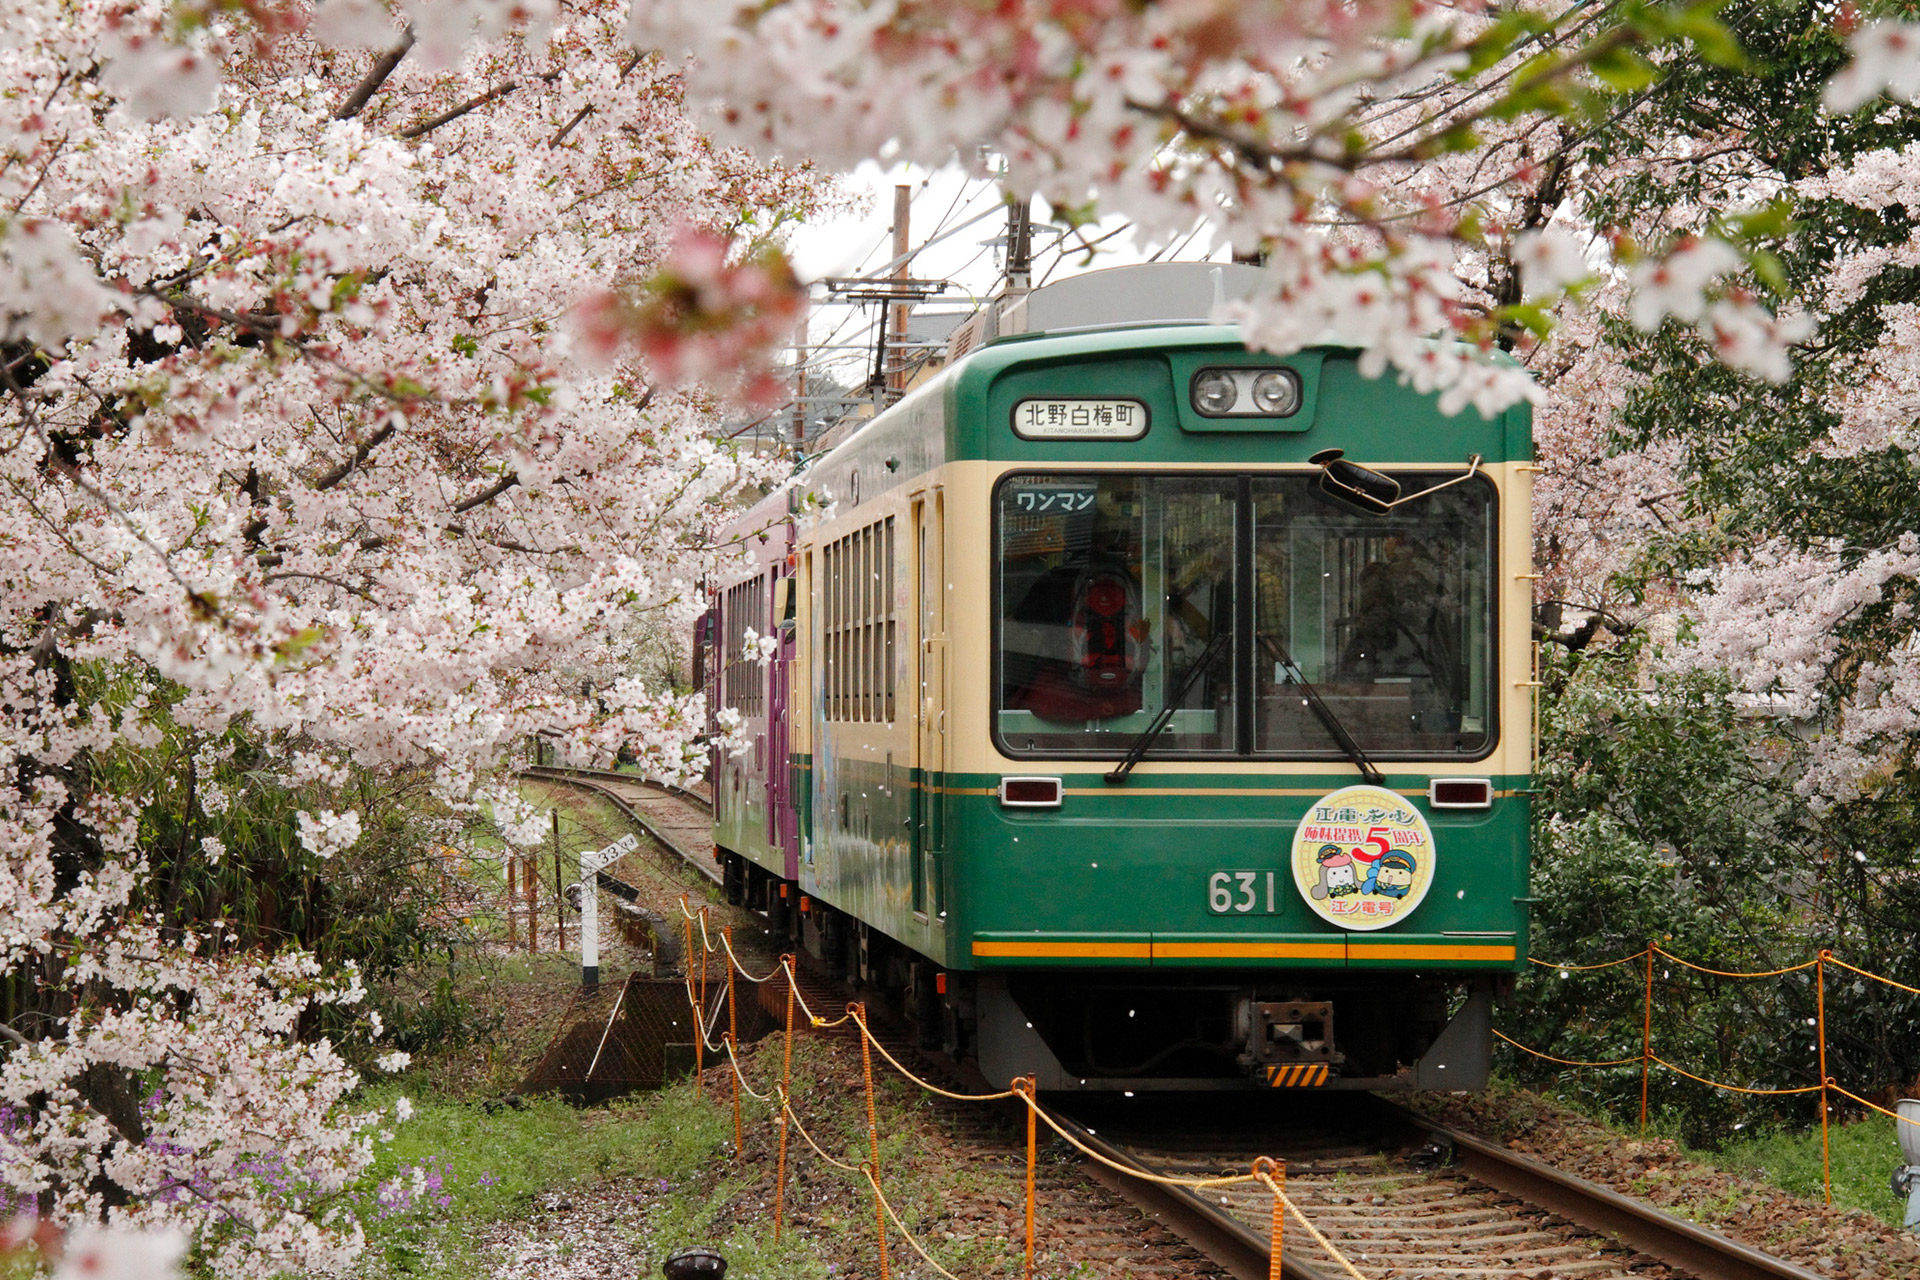 古き良き日本の風景と桜が織りなす絶景 京都の桜の名所とは Caedekyoto カエデ京都 紅葉と伝統美を引き継ぐバッグ